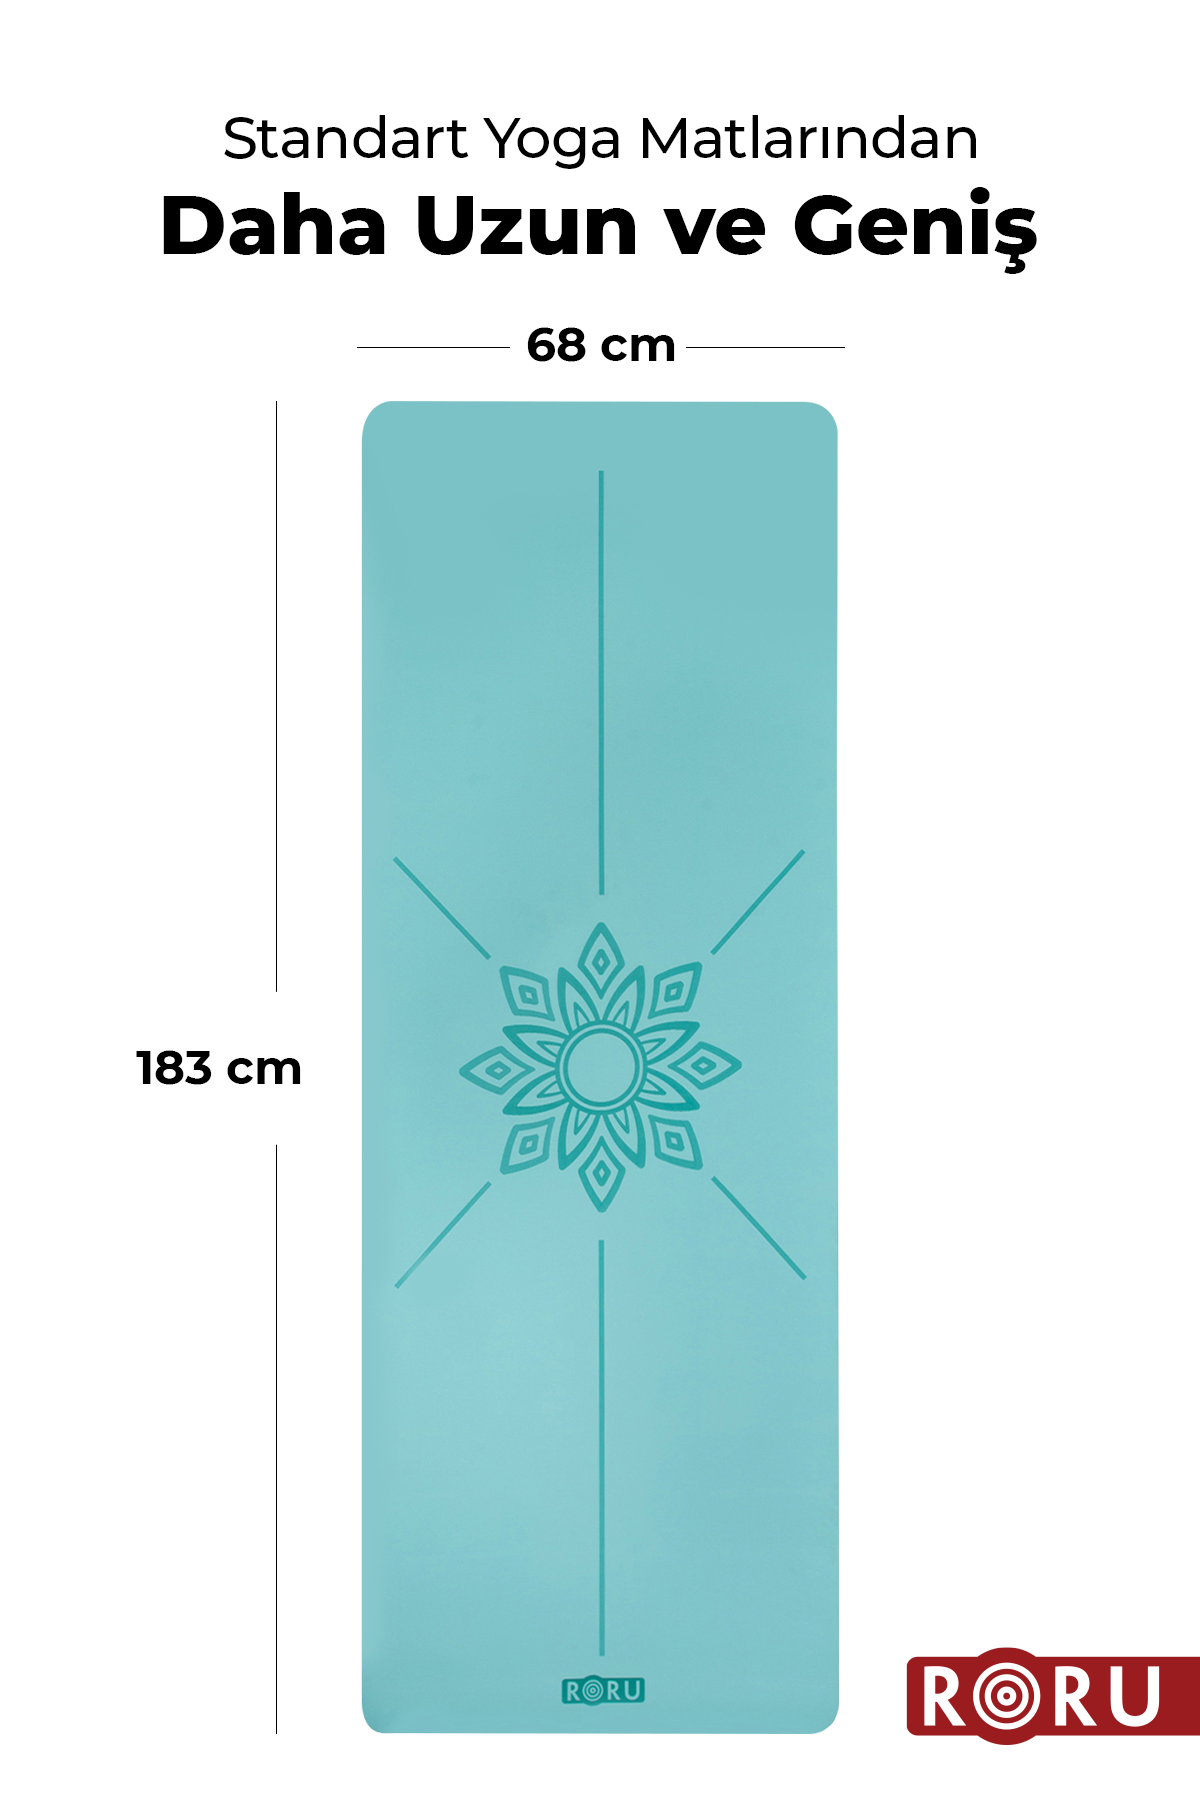 Roru Concept Sun Kaydırmaz Yoga Egzersiz Matı 183 x 68 cm 5 mm Kuru - Nemli Eller İçin, Doğal Kauçuk, Mavi